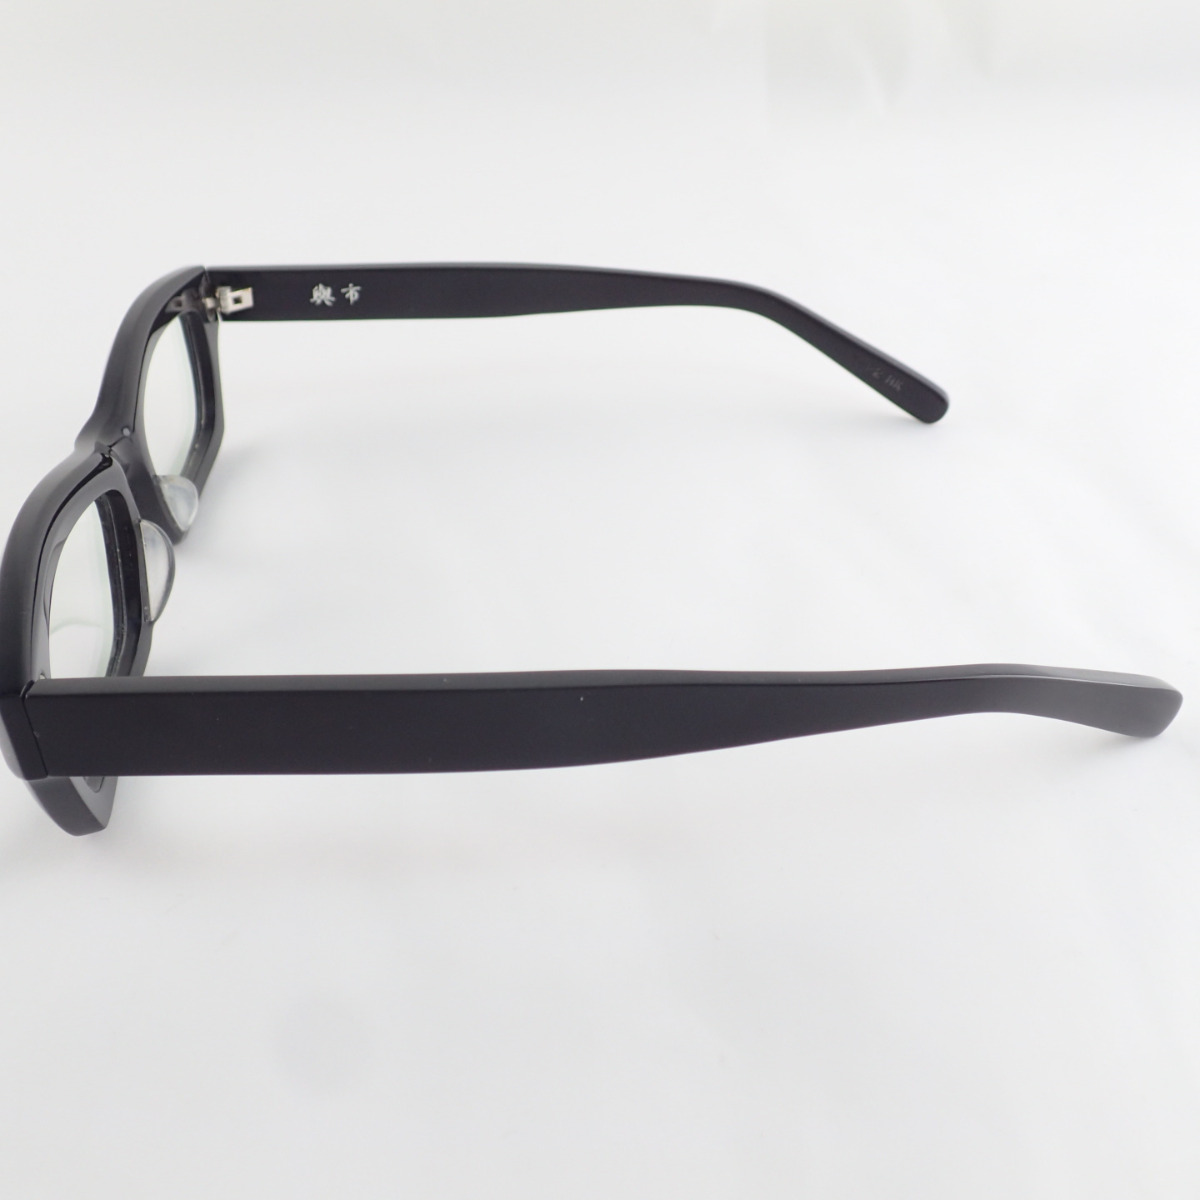 楽天市場】KANEKO OPTICAL 金子眼鏡 Y-22 BK 興市 紀州備長炭配合